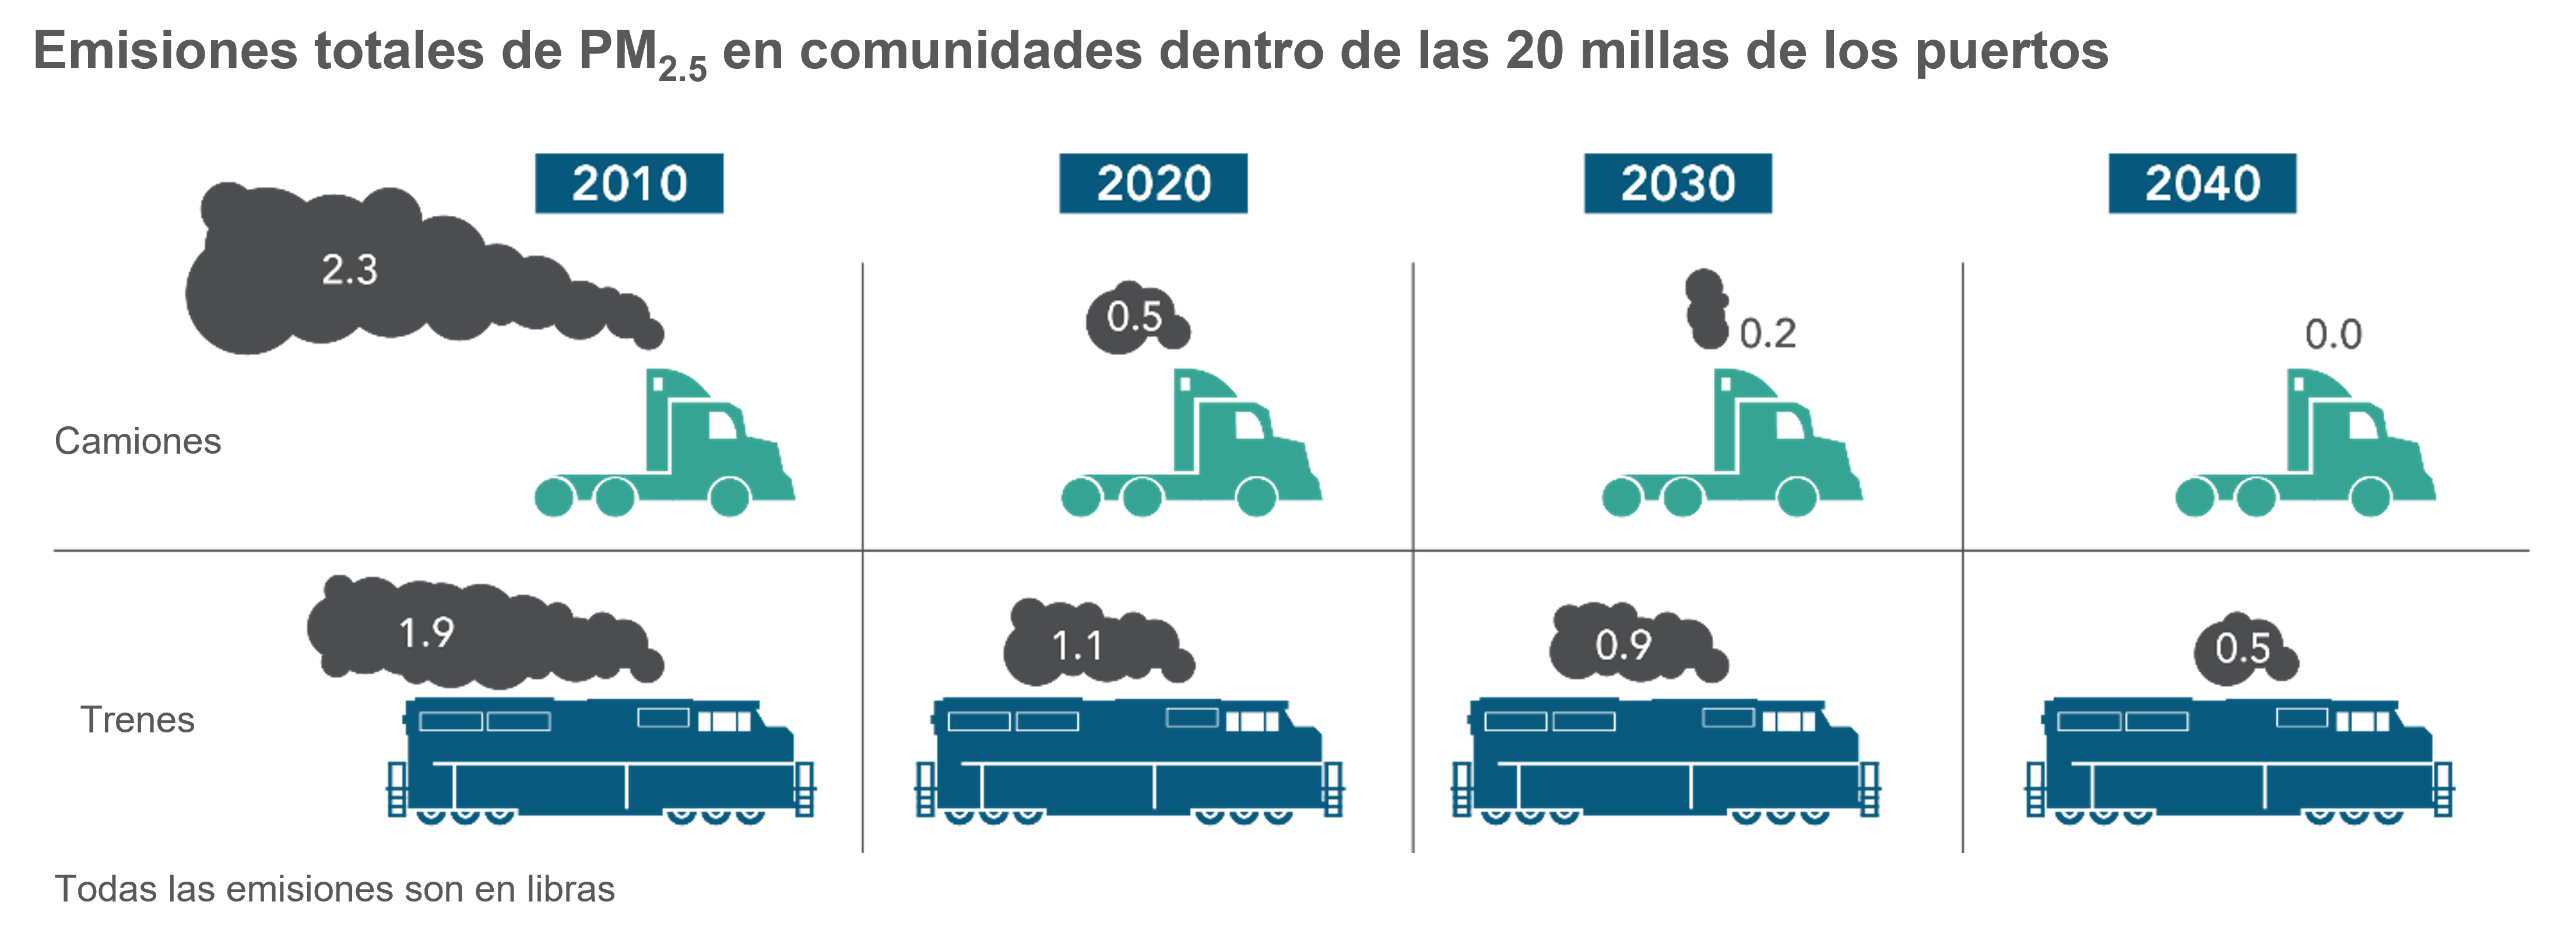 Comparación de las emisiones de PM 2.5 de camiones y trenes en comunidades dentro de las 20 millas de los puertos.